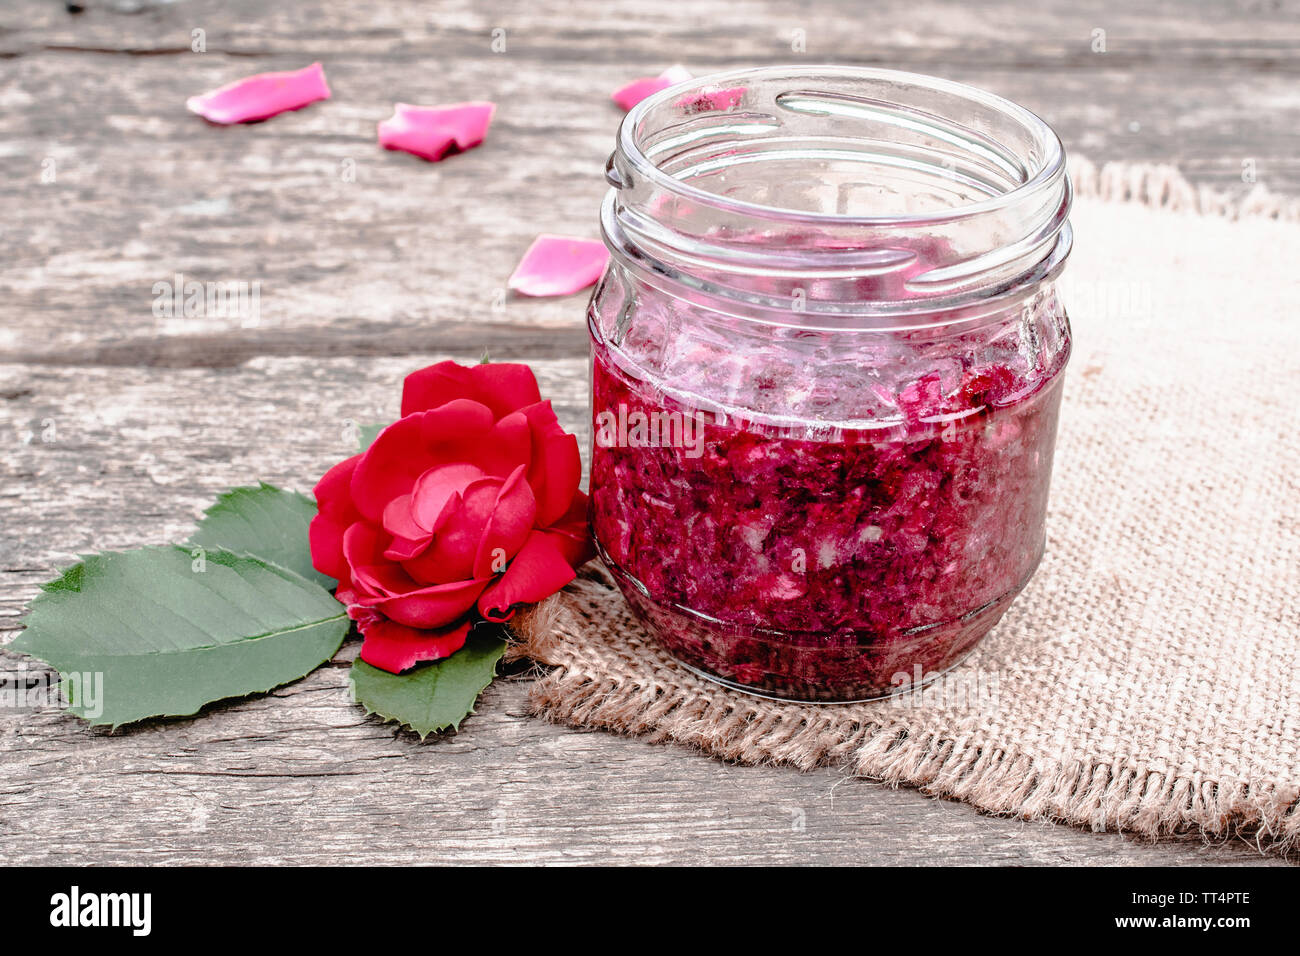 Confiture de pétales de rose sur une table en bois. Confiture de fleurs. Alimentation saine. Copy space Banque D'Images